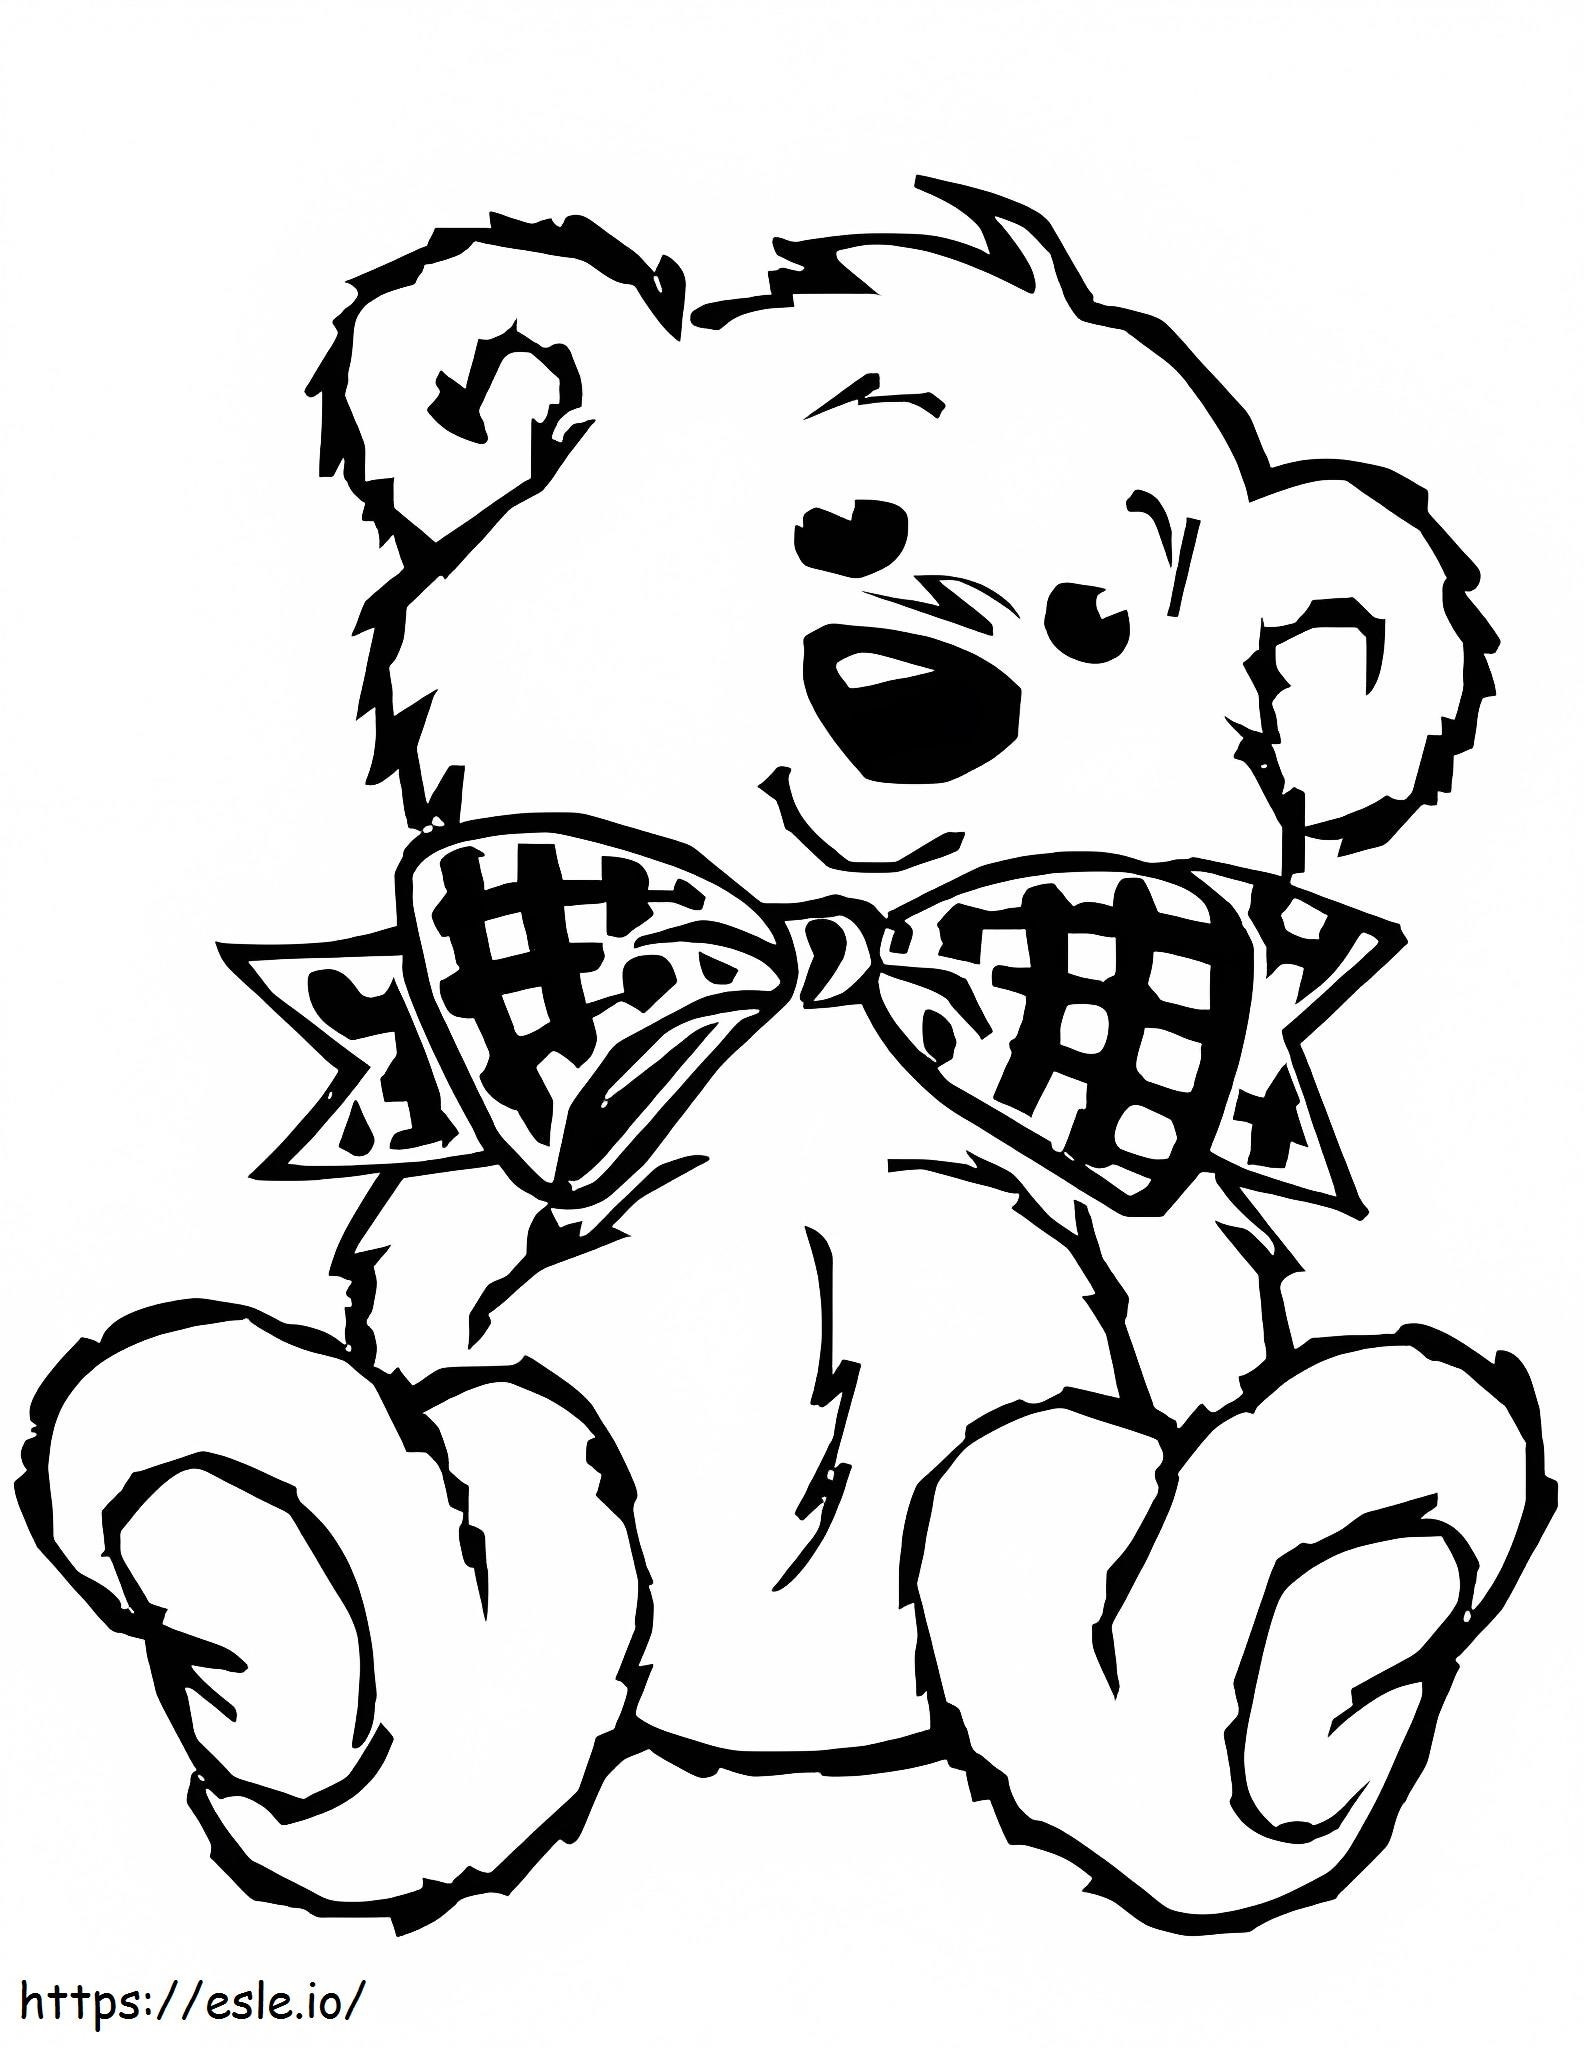 Big Teddy Bear coloring page